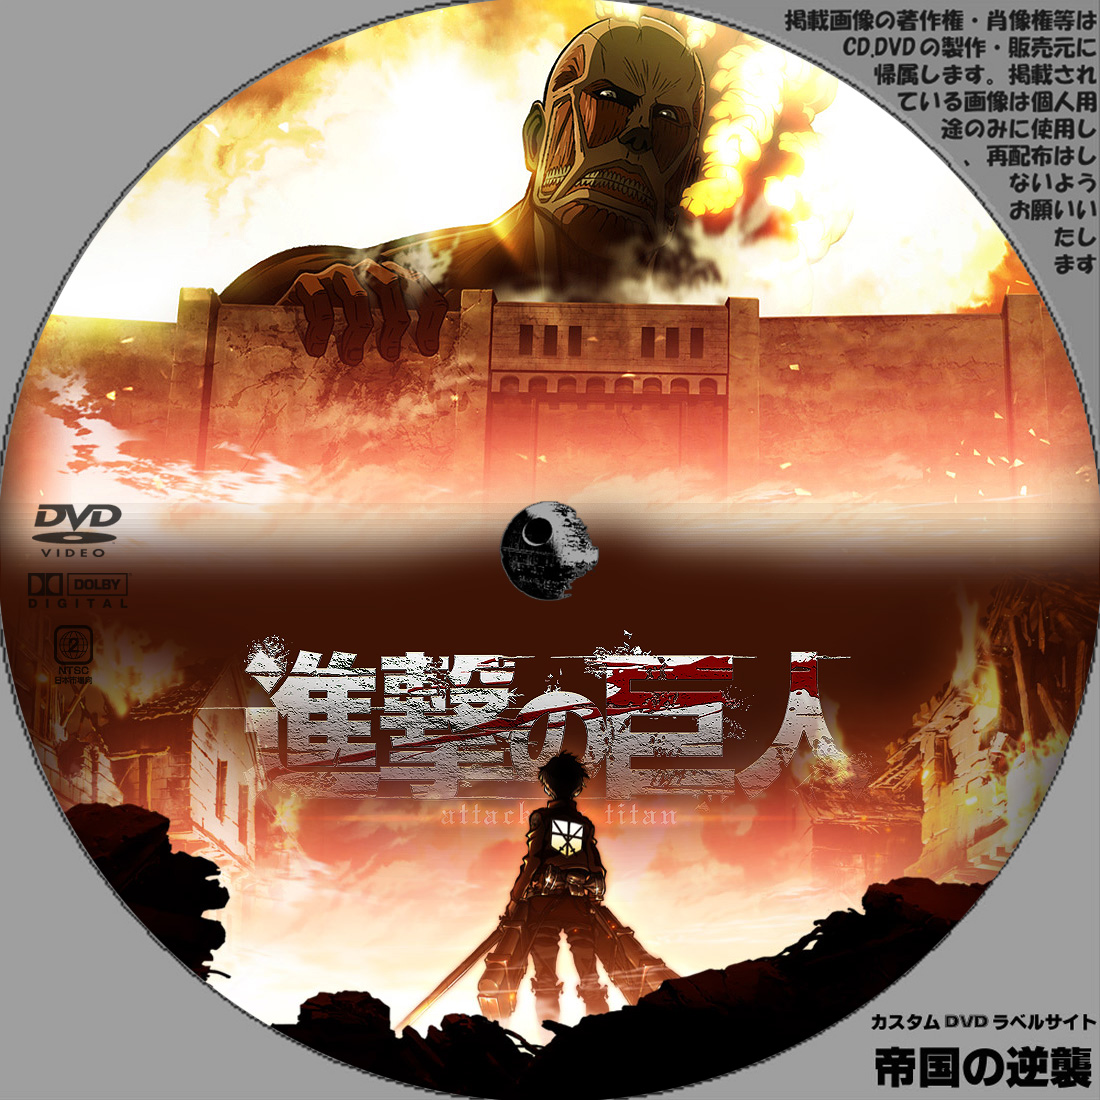 進撃の巨人 DVDラベル: 新作映画のDVDラベル 続・帝国の逆襲